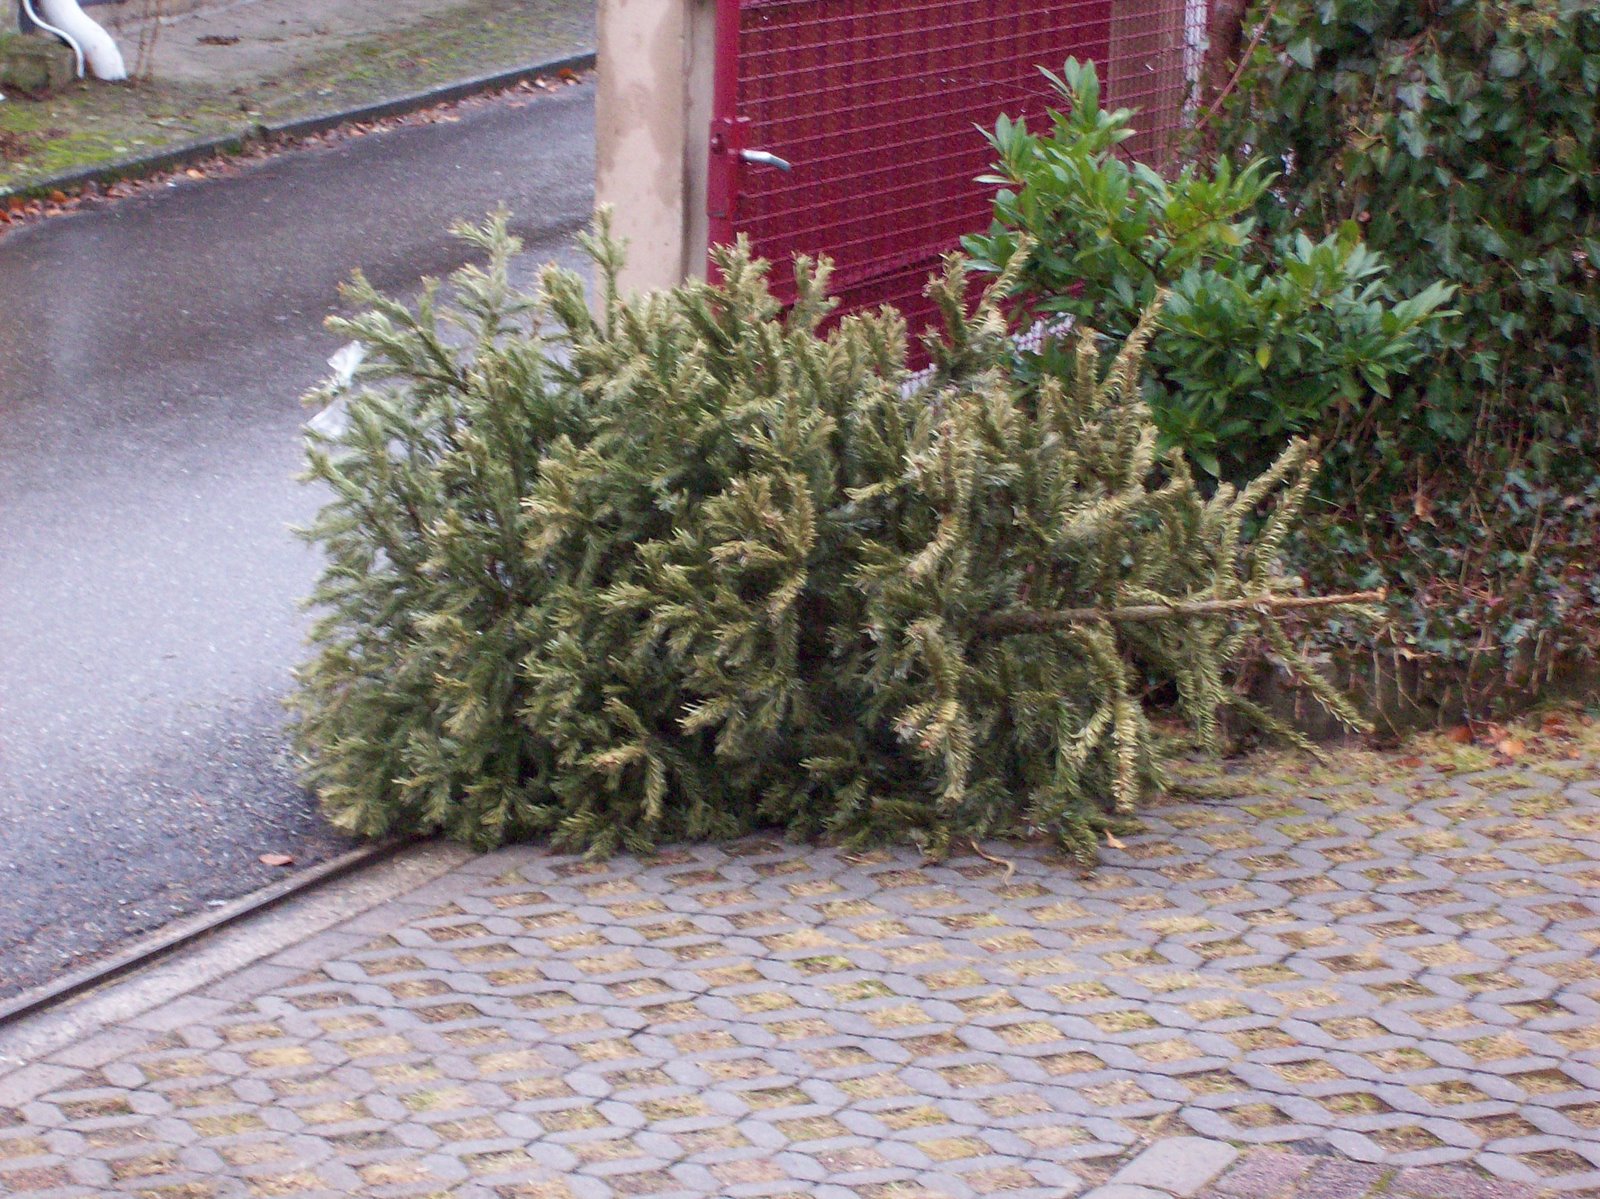 [christmas+tree.JPG]